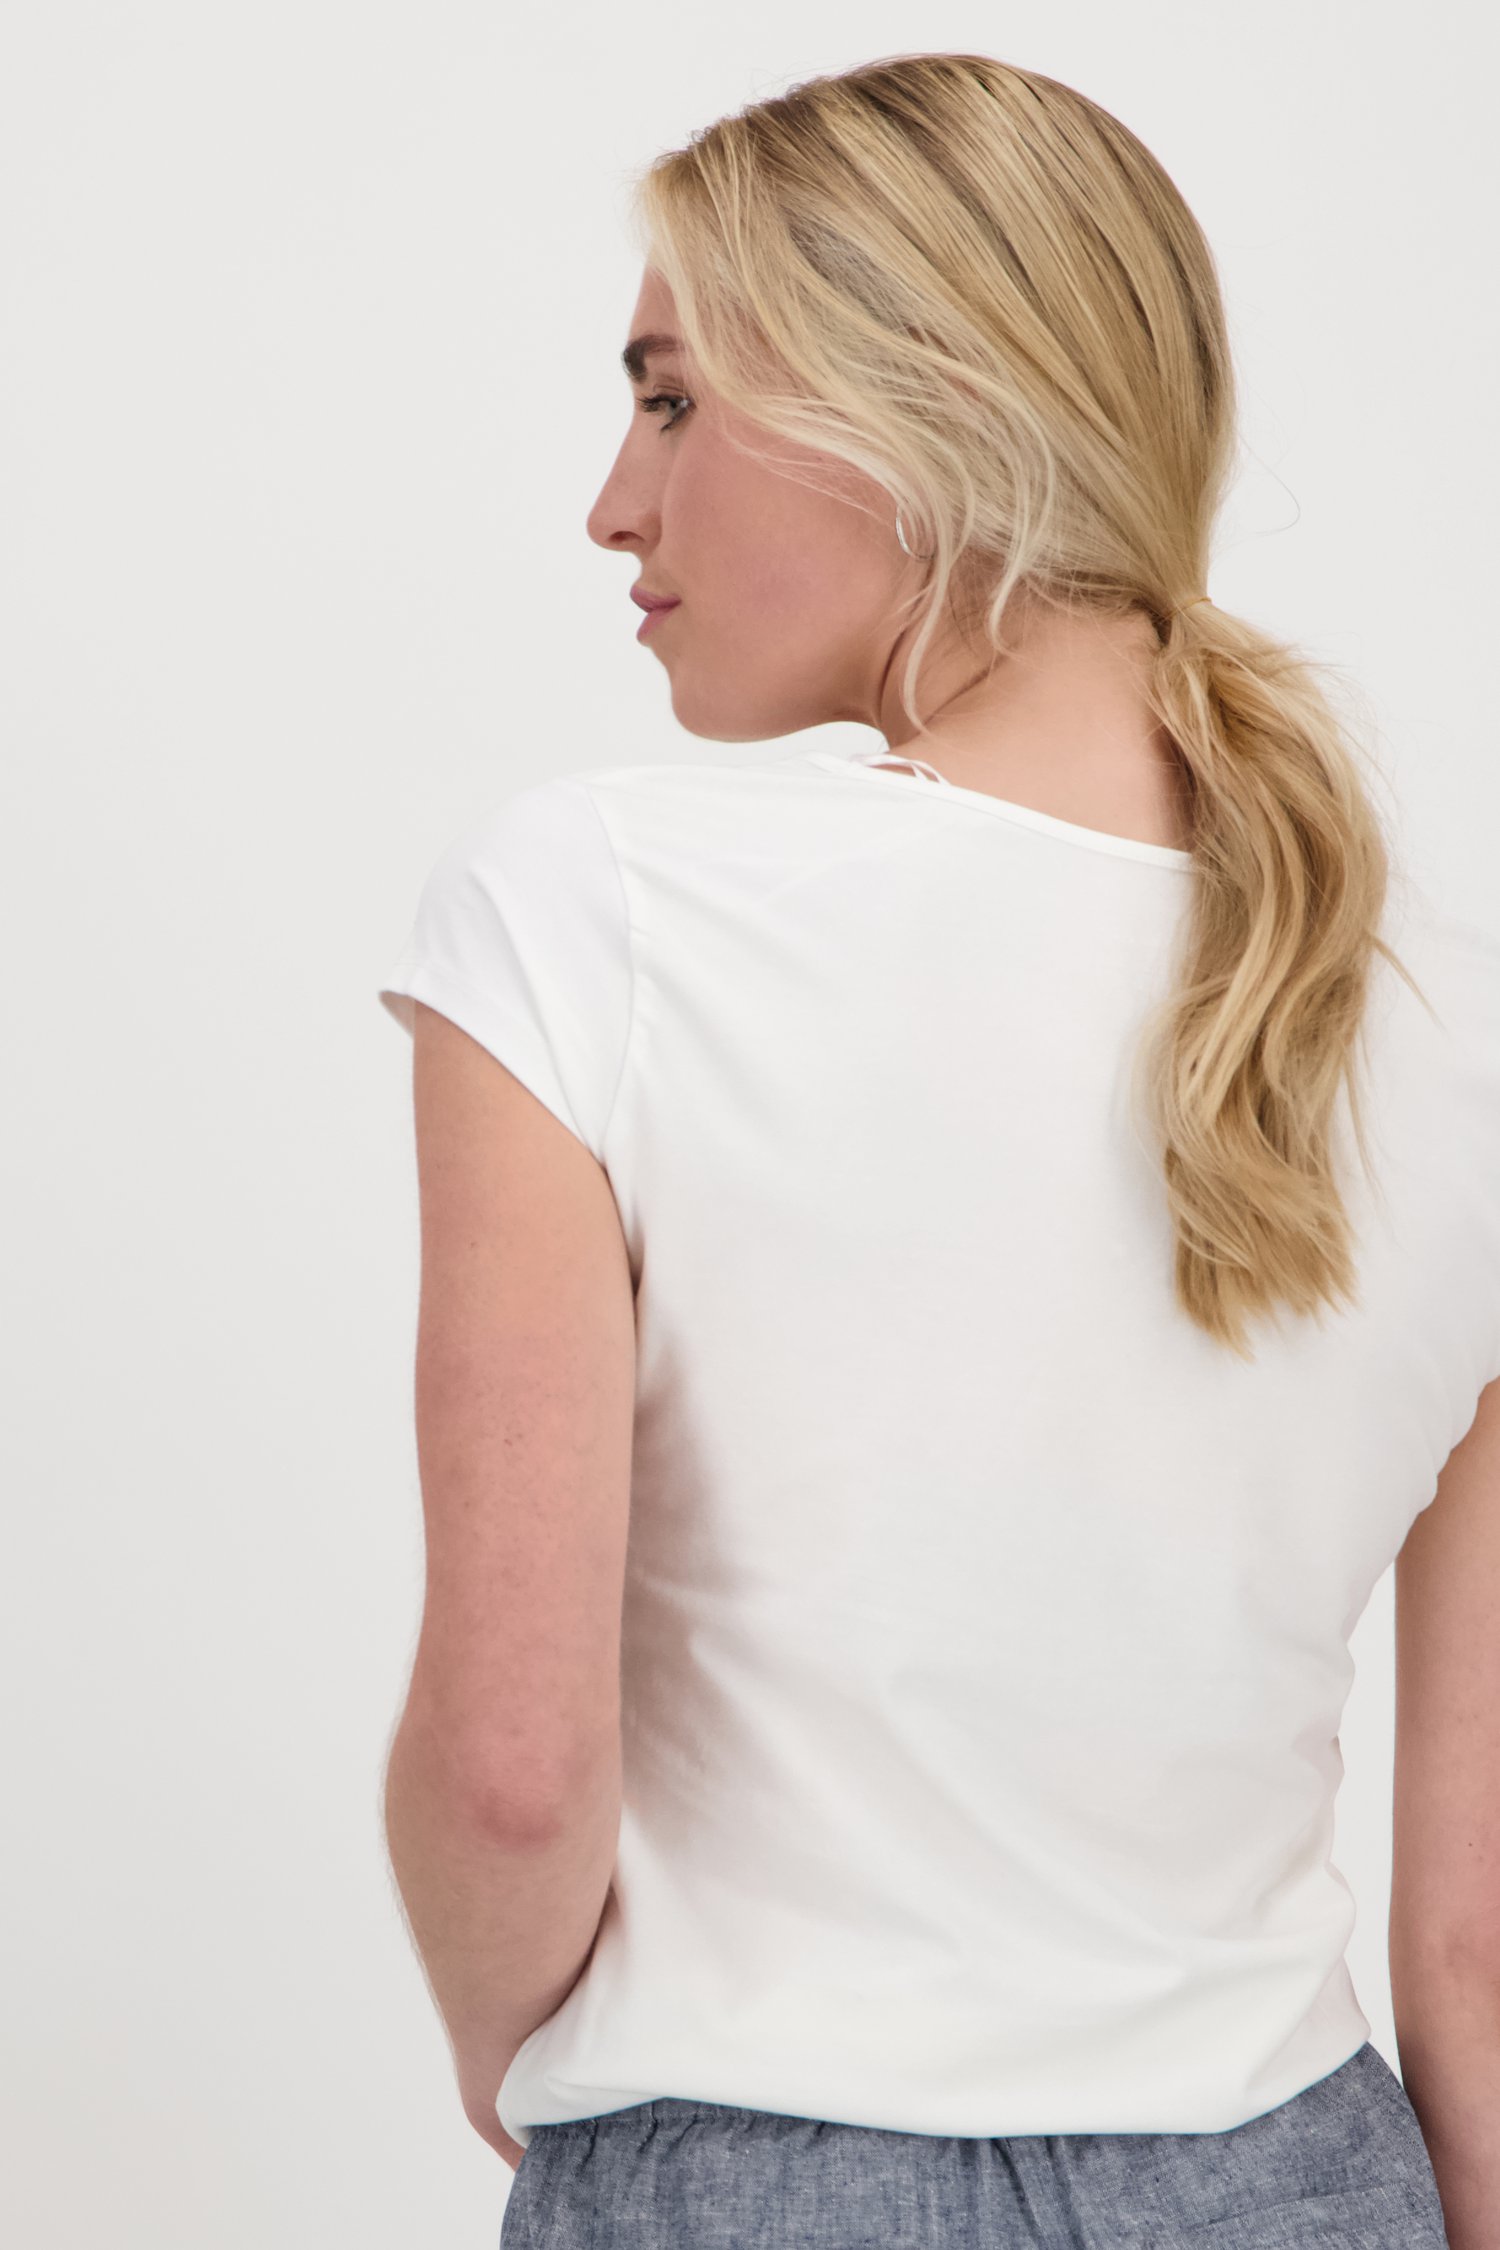 T-shirt blanc simple avec col en V de Liberty Island pour Femmes